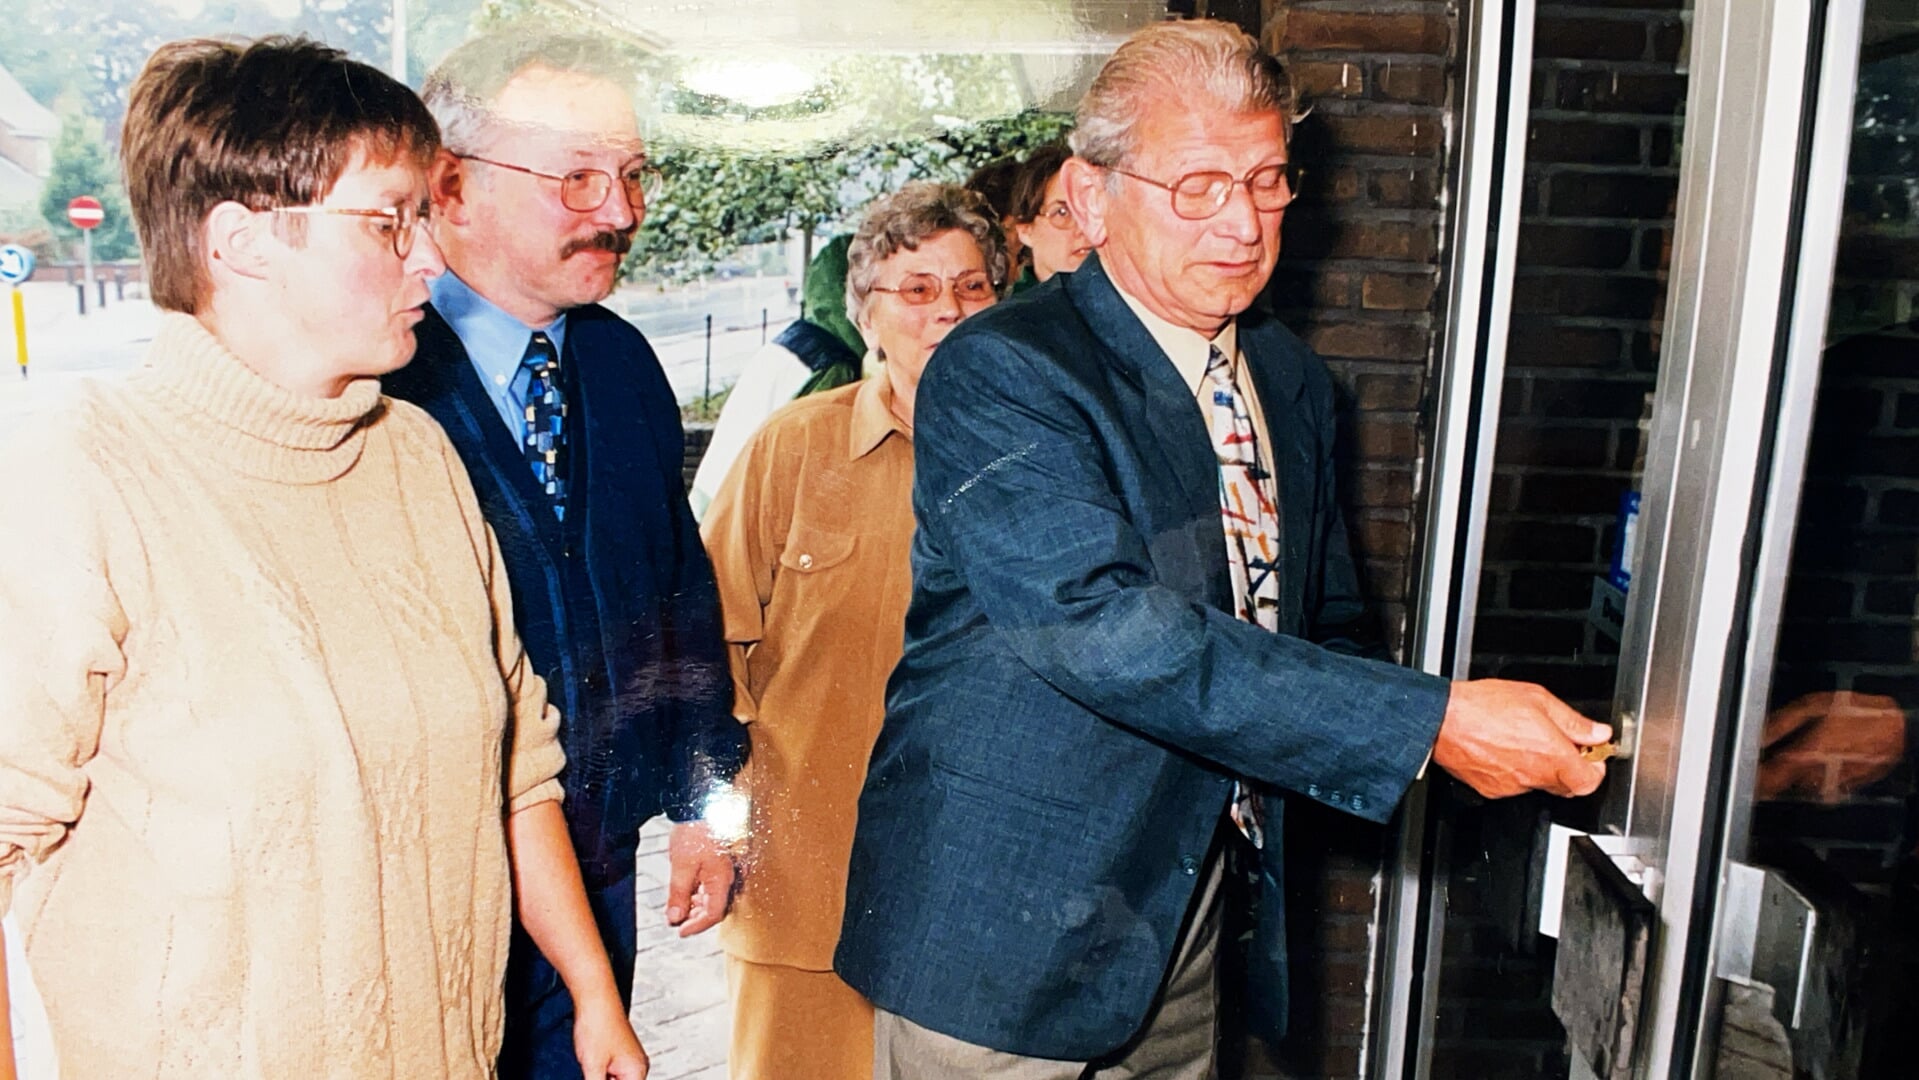 Marcels ouders Geert en Fiene openen de winkel aan de Goorsestraat in 1998